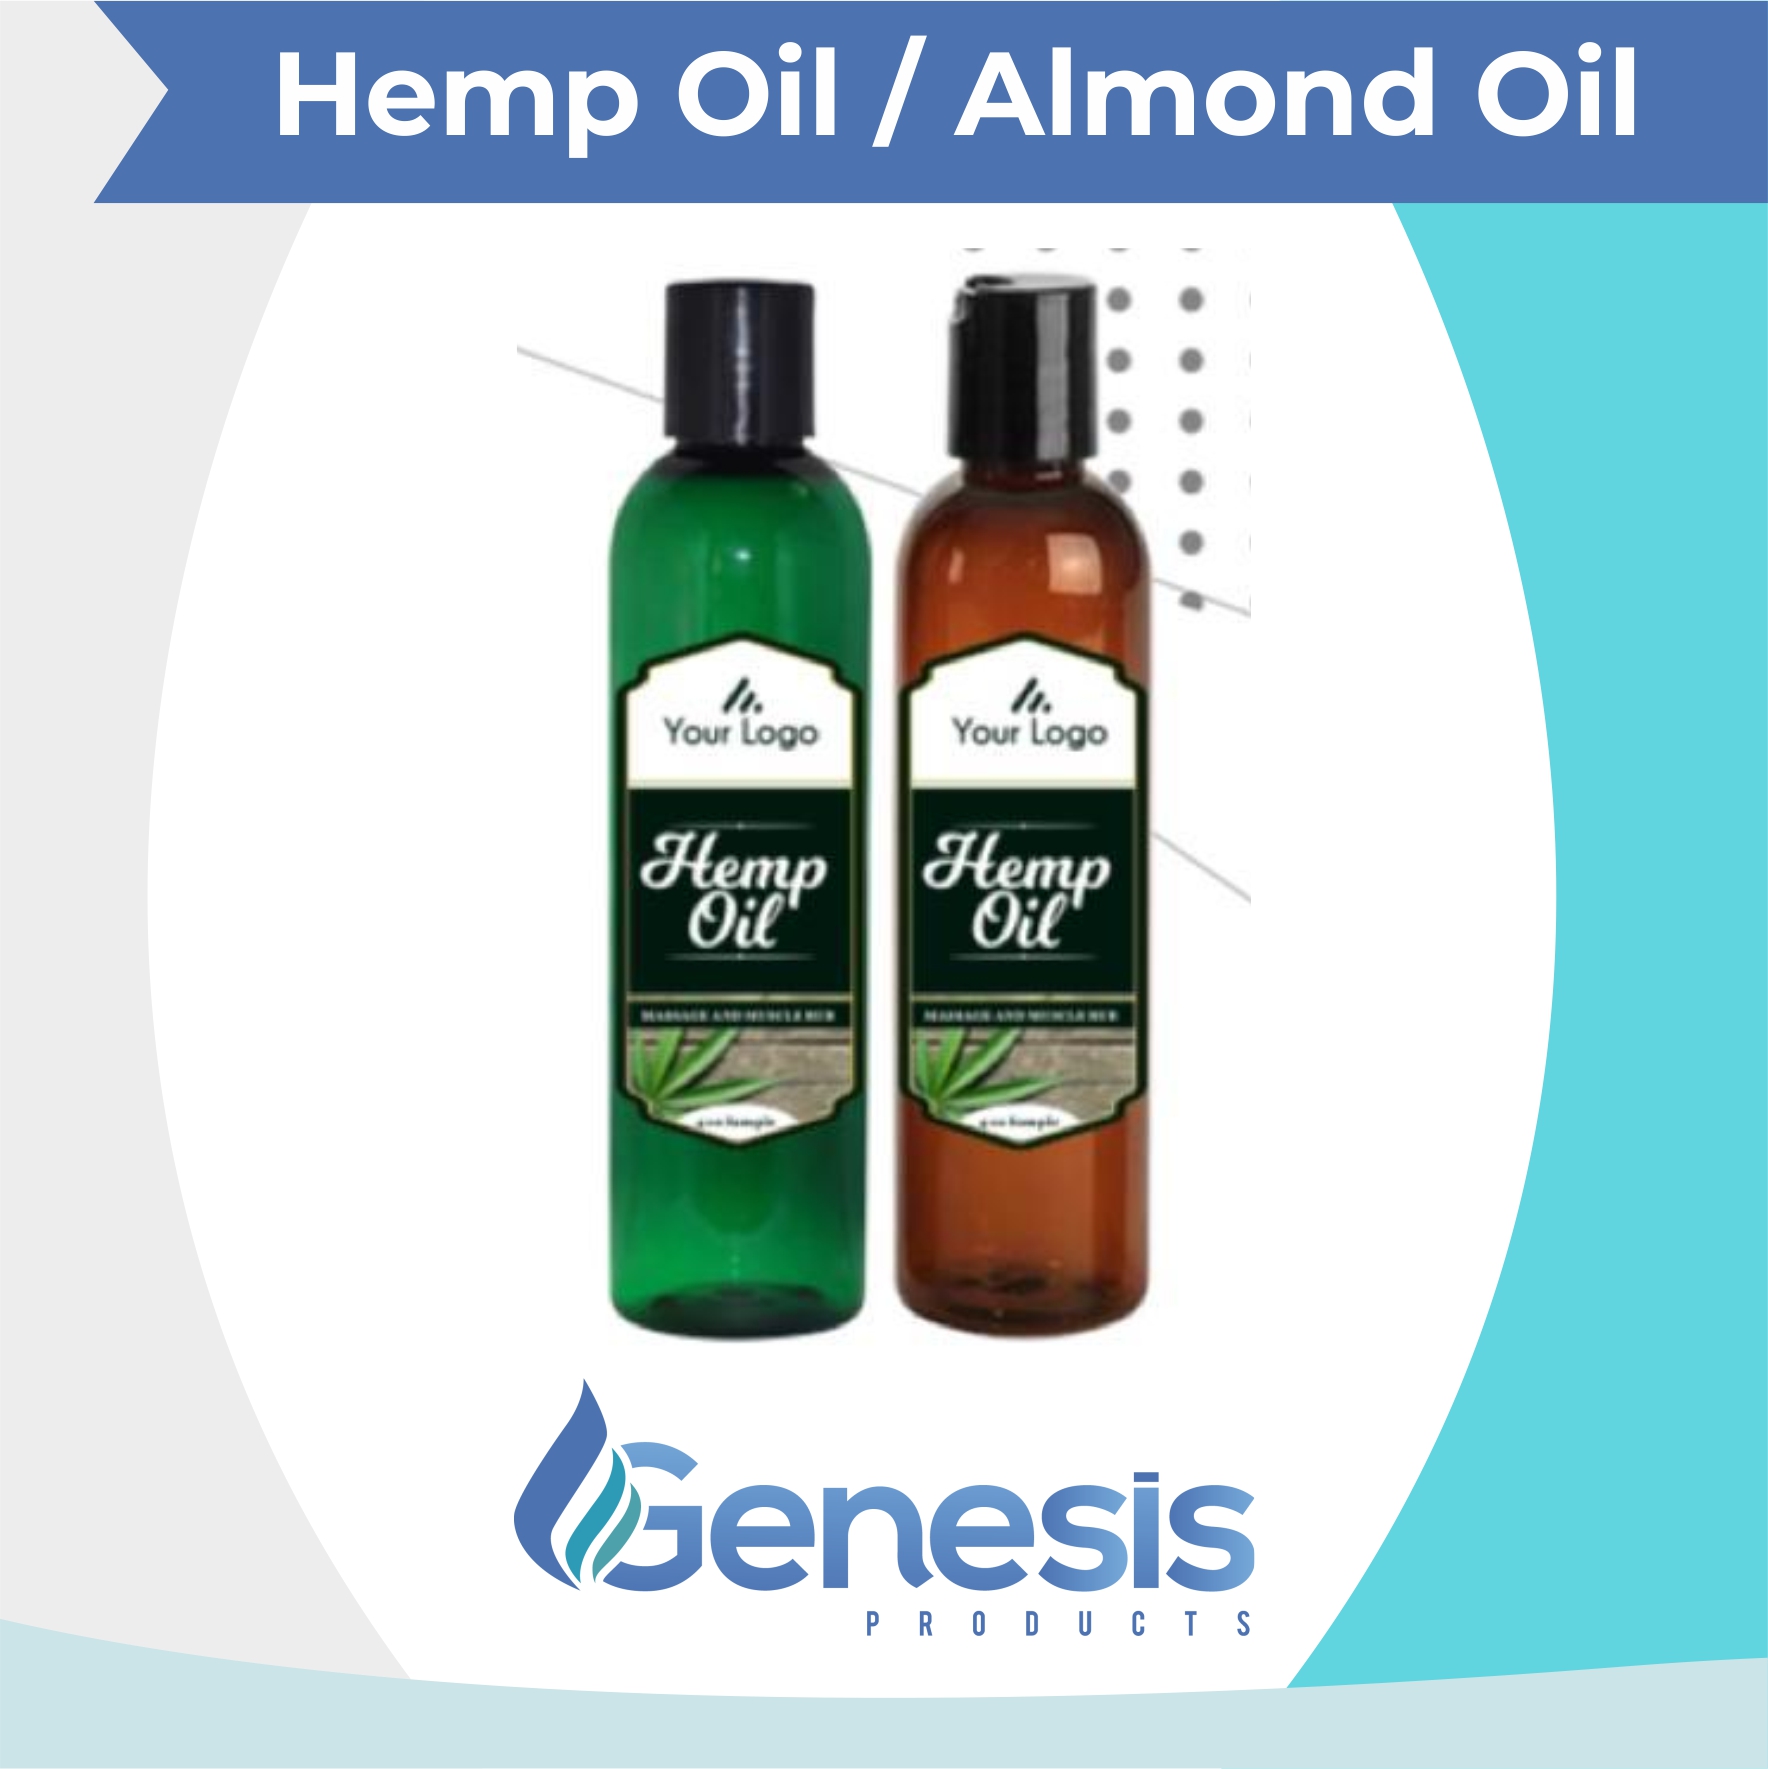 Hemp Oil / Almond Oil